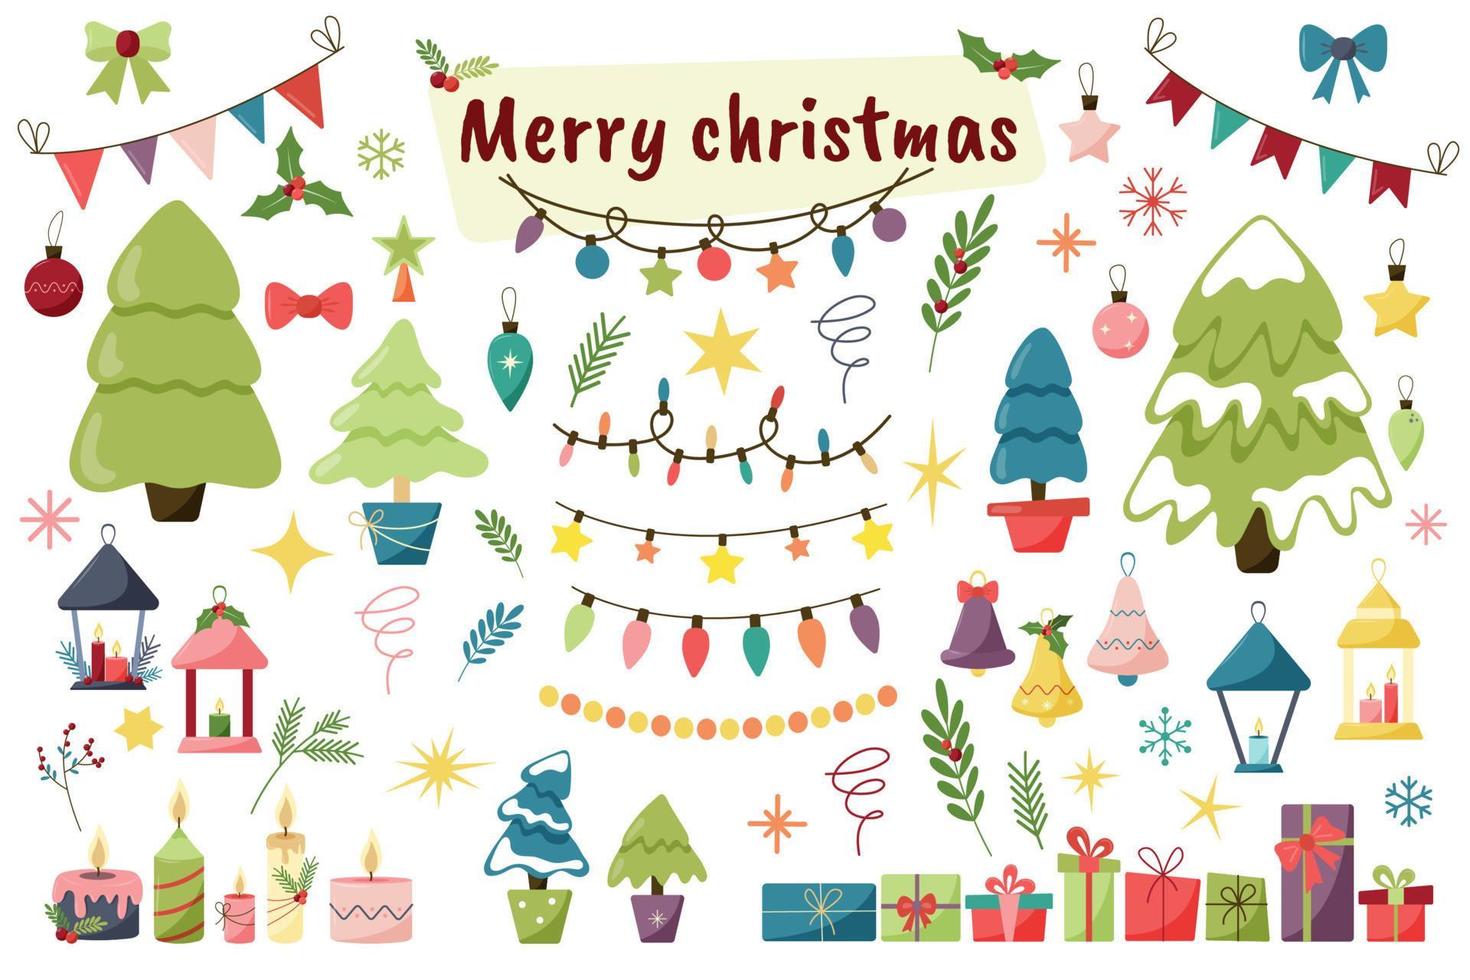 éléments de noël plats. arbre de Noël, guirlande, bougies, lanternes, cadeaux, décorations, cloches, branches de gui vecteur